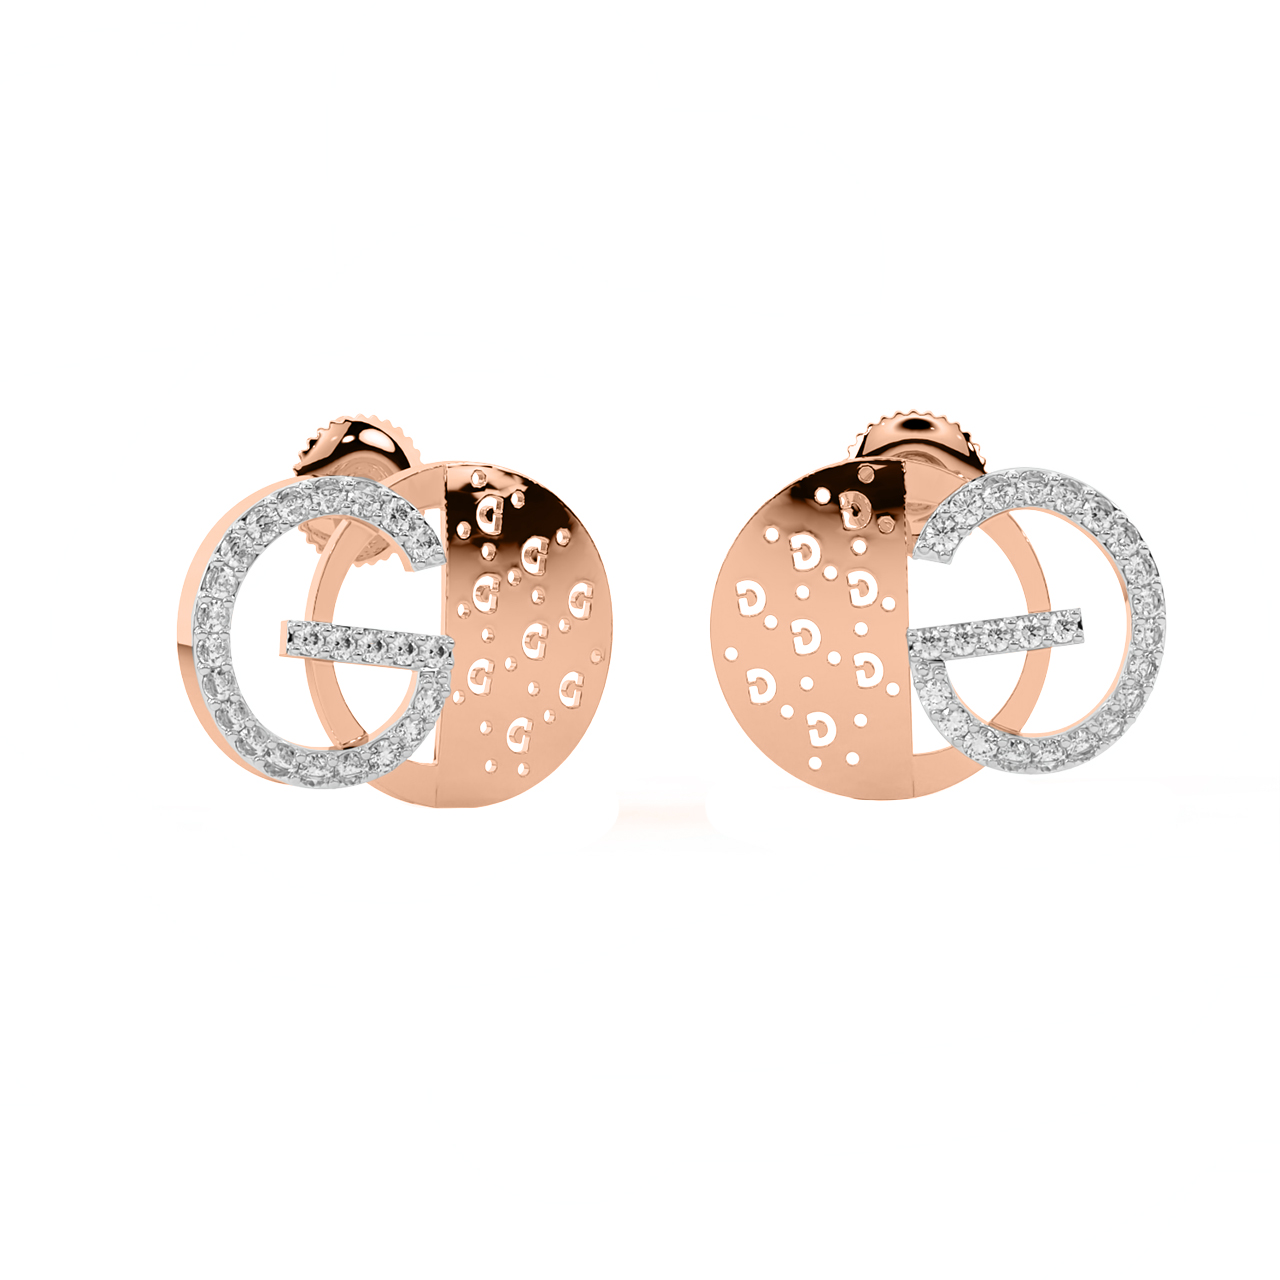 G Design Diamond Stud Earrings